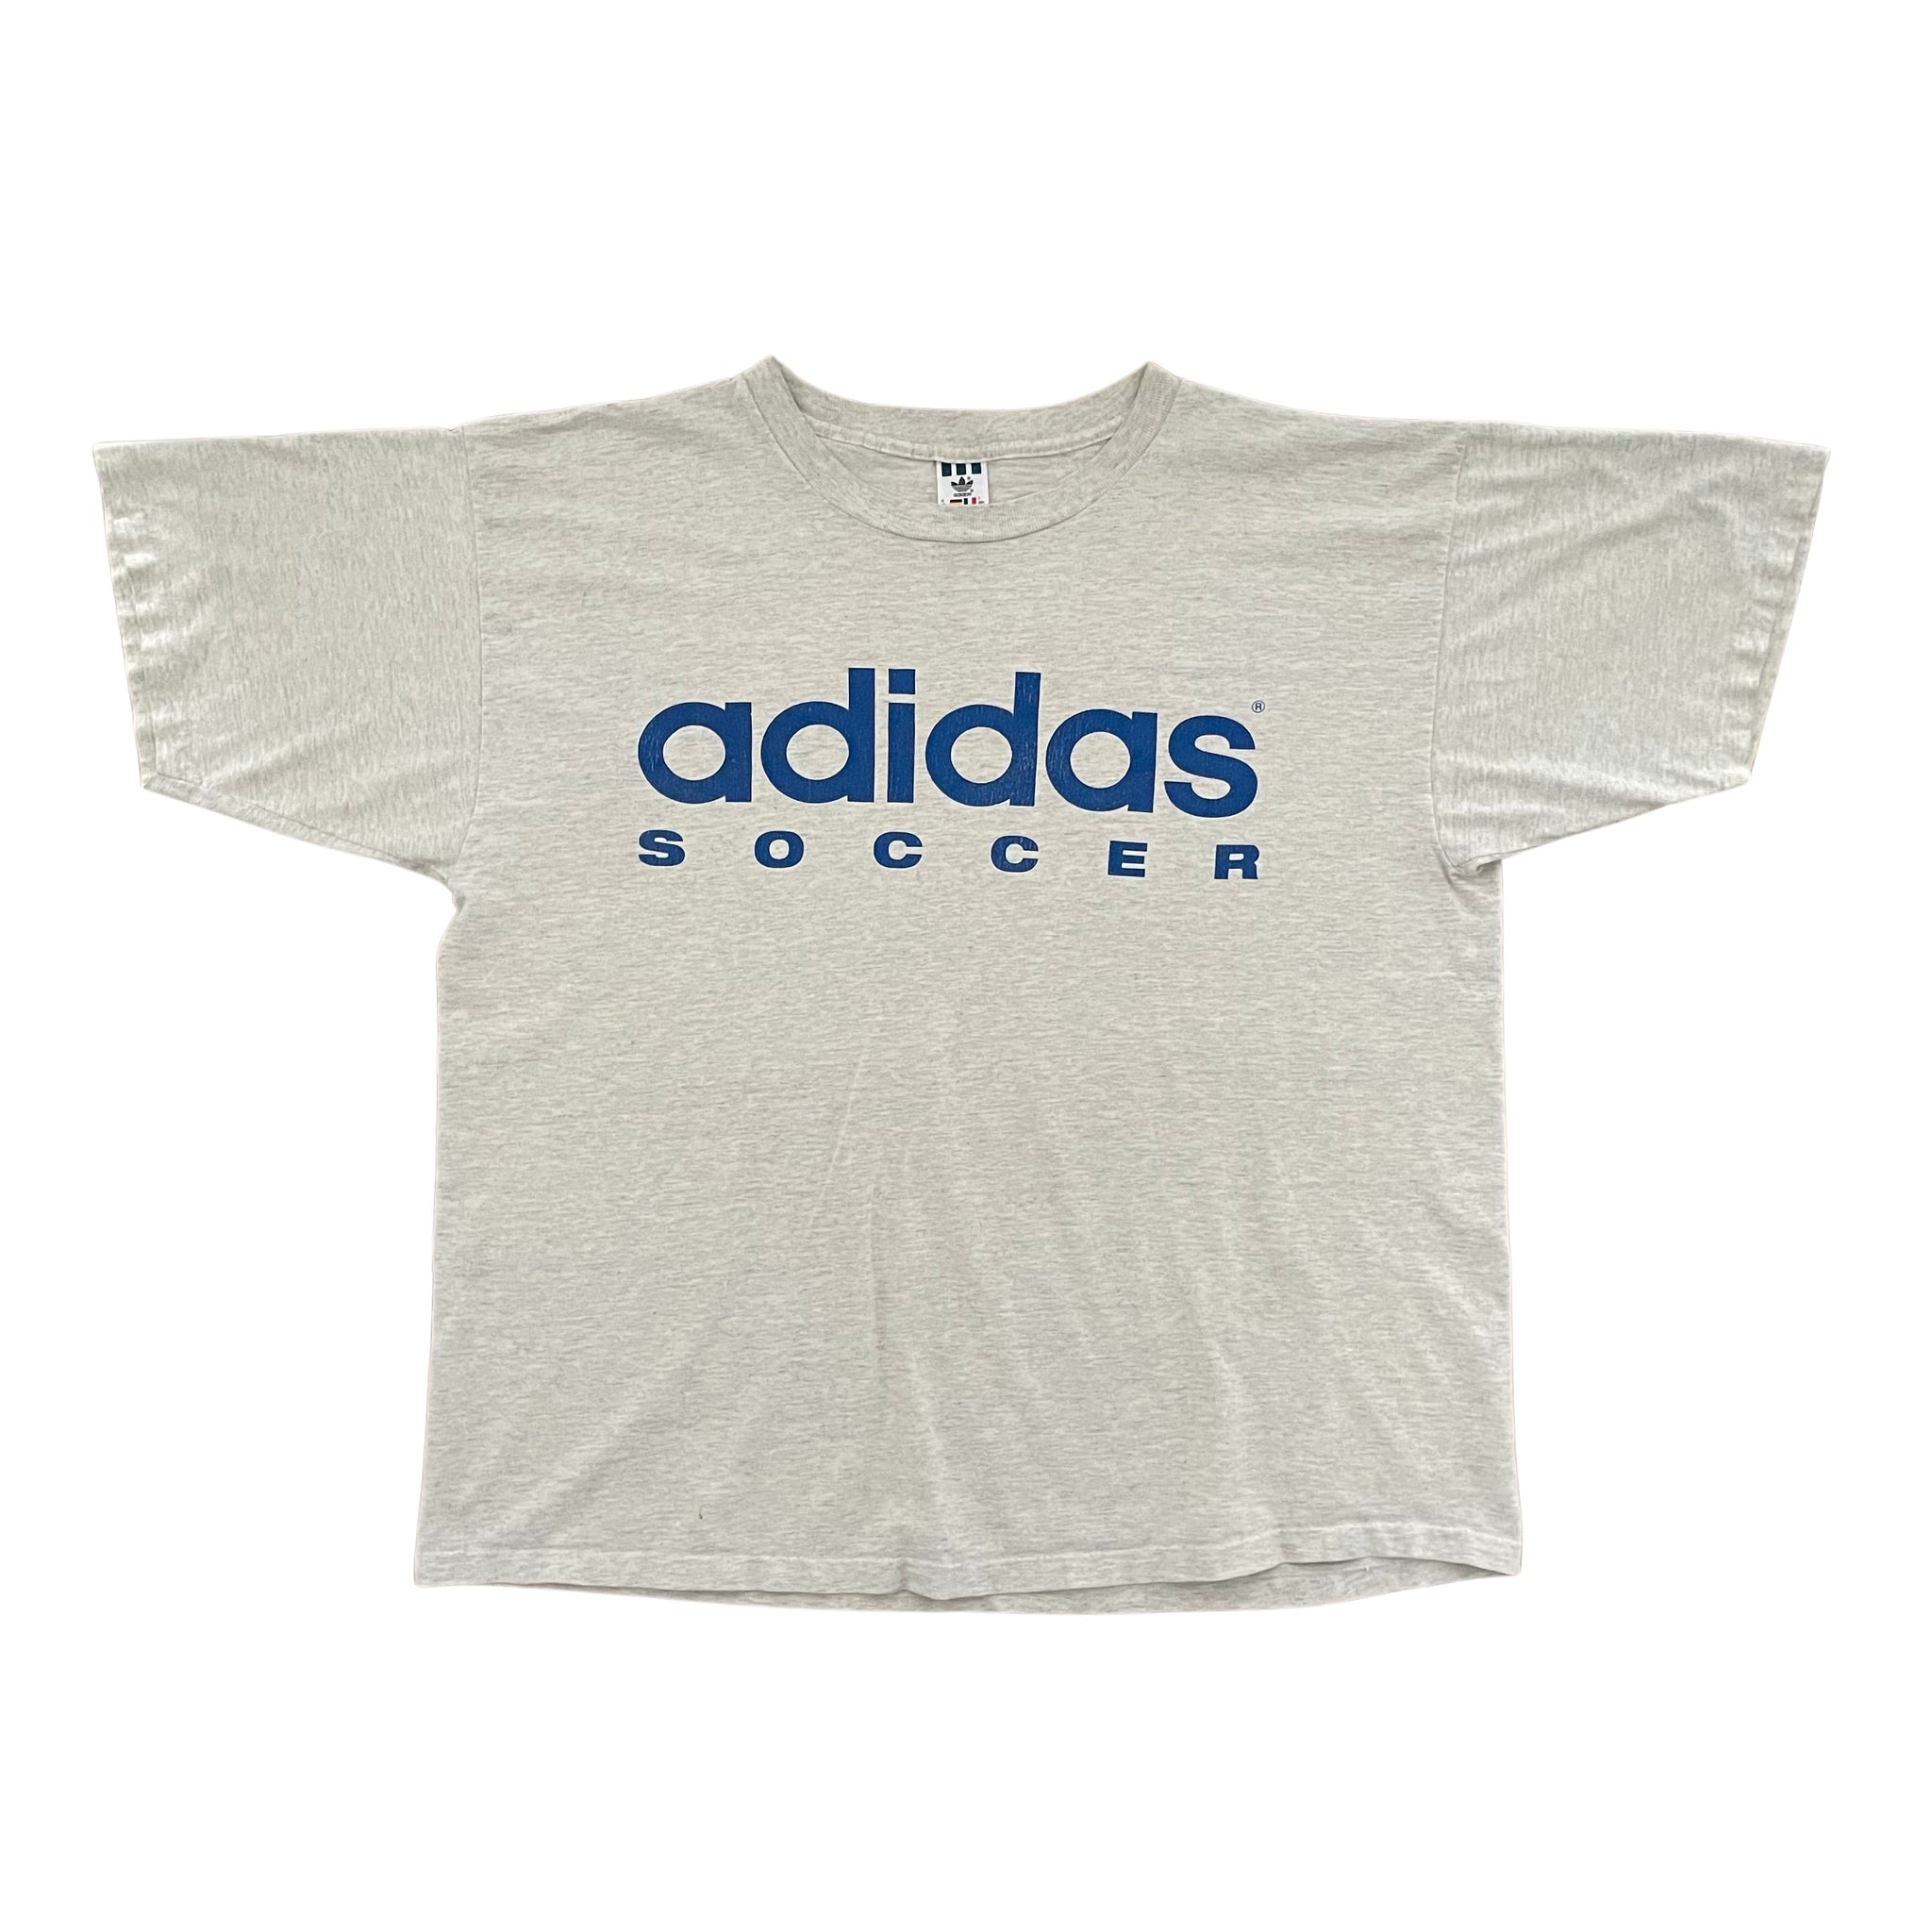 1995 Adidas Duke Women's Soccer T-Shirt - XL